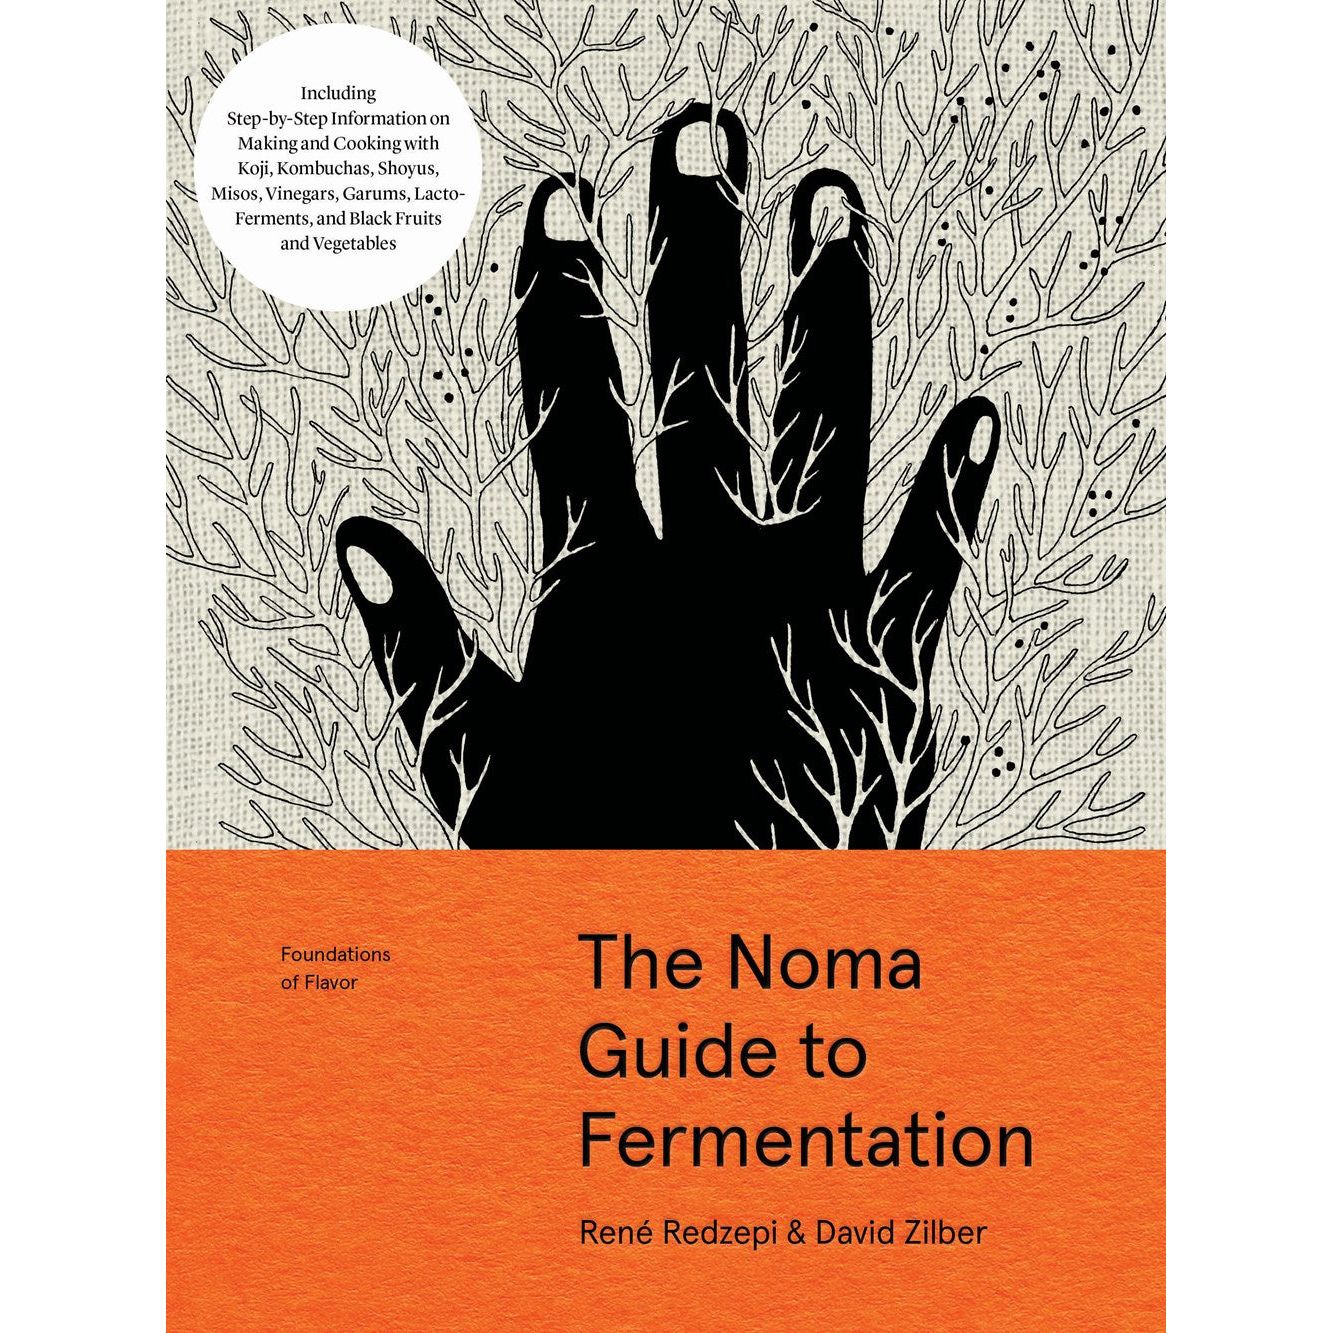 The Noma Guide to Fermentation (René Redzepi & David Zilber)